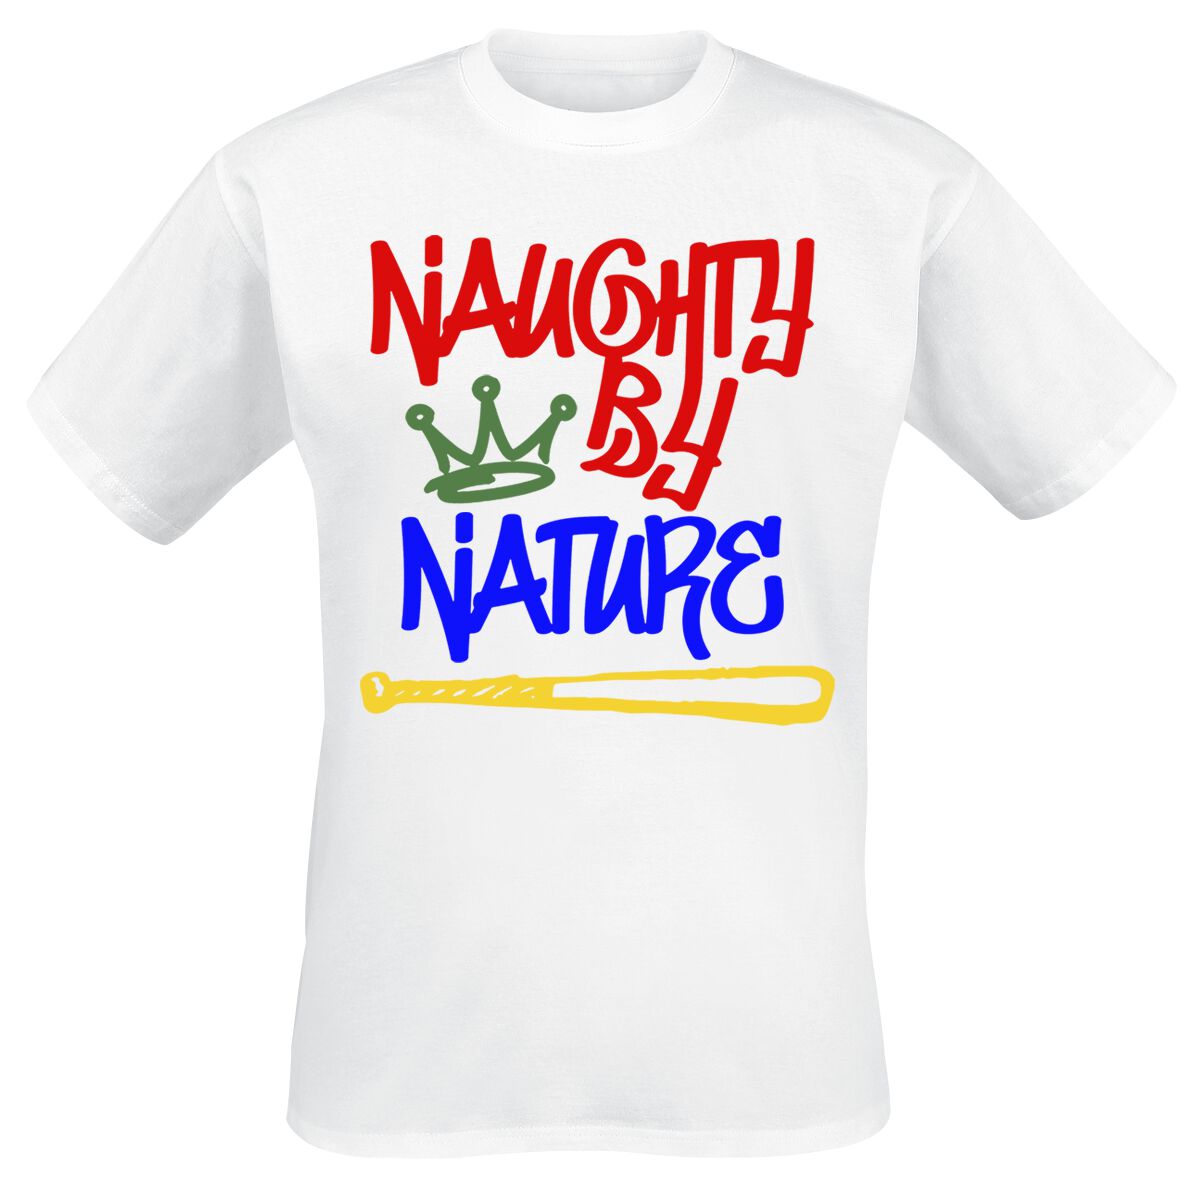 Naughty by Nature T-Shirt - Graffiti Logo - S bis 3XL - für Männer - Größe M - weiß  - Lizenziertes Merchandise!